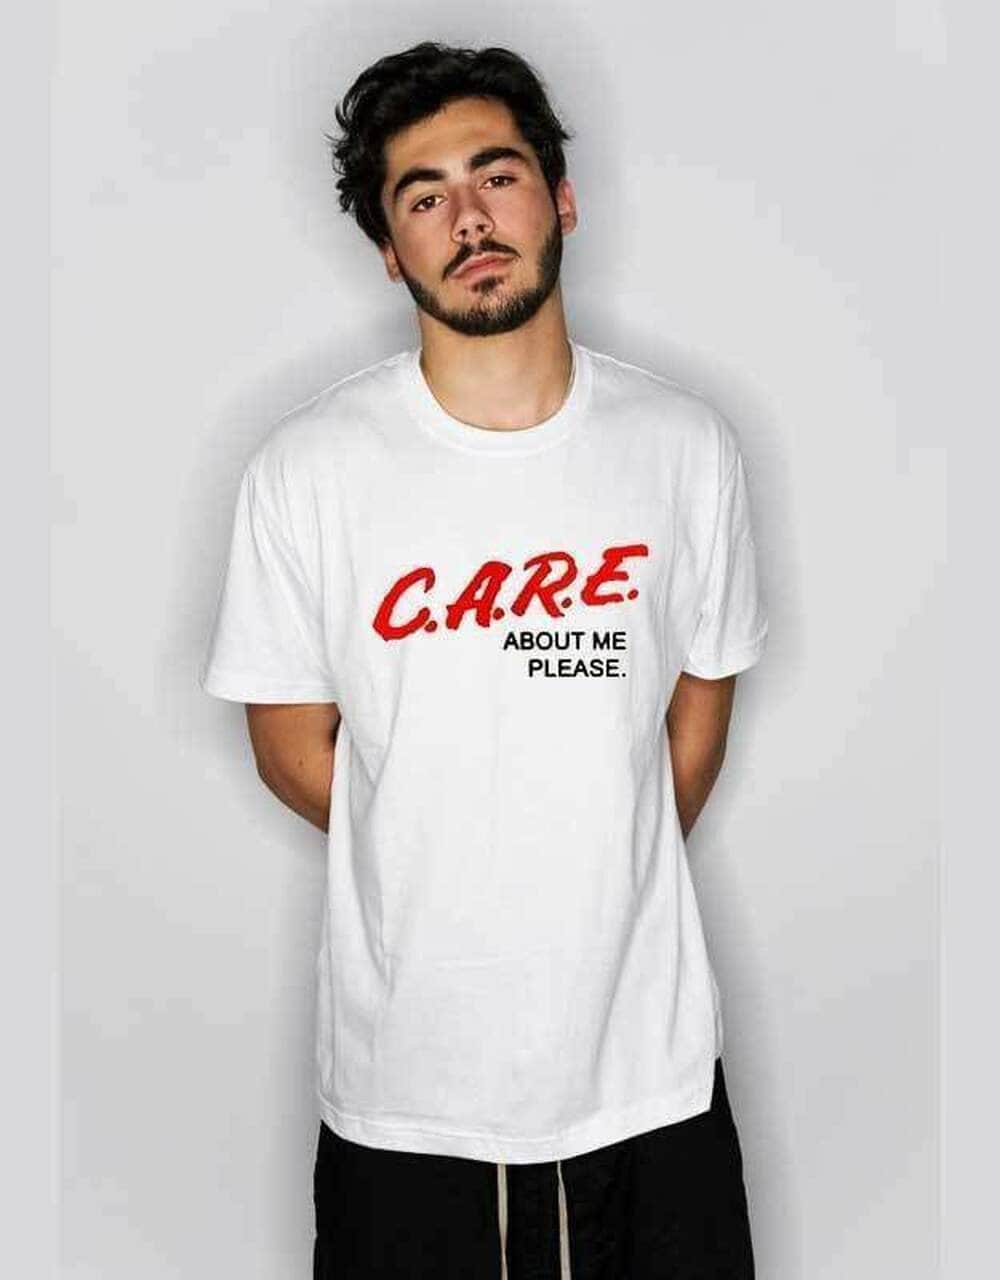 C.A.R.E About Me Please Shirt